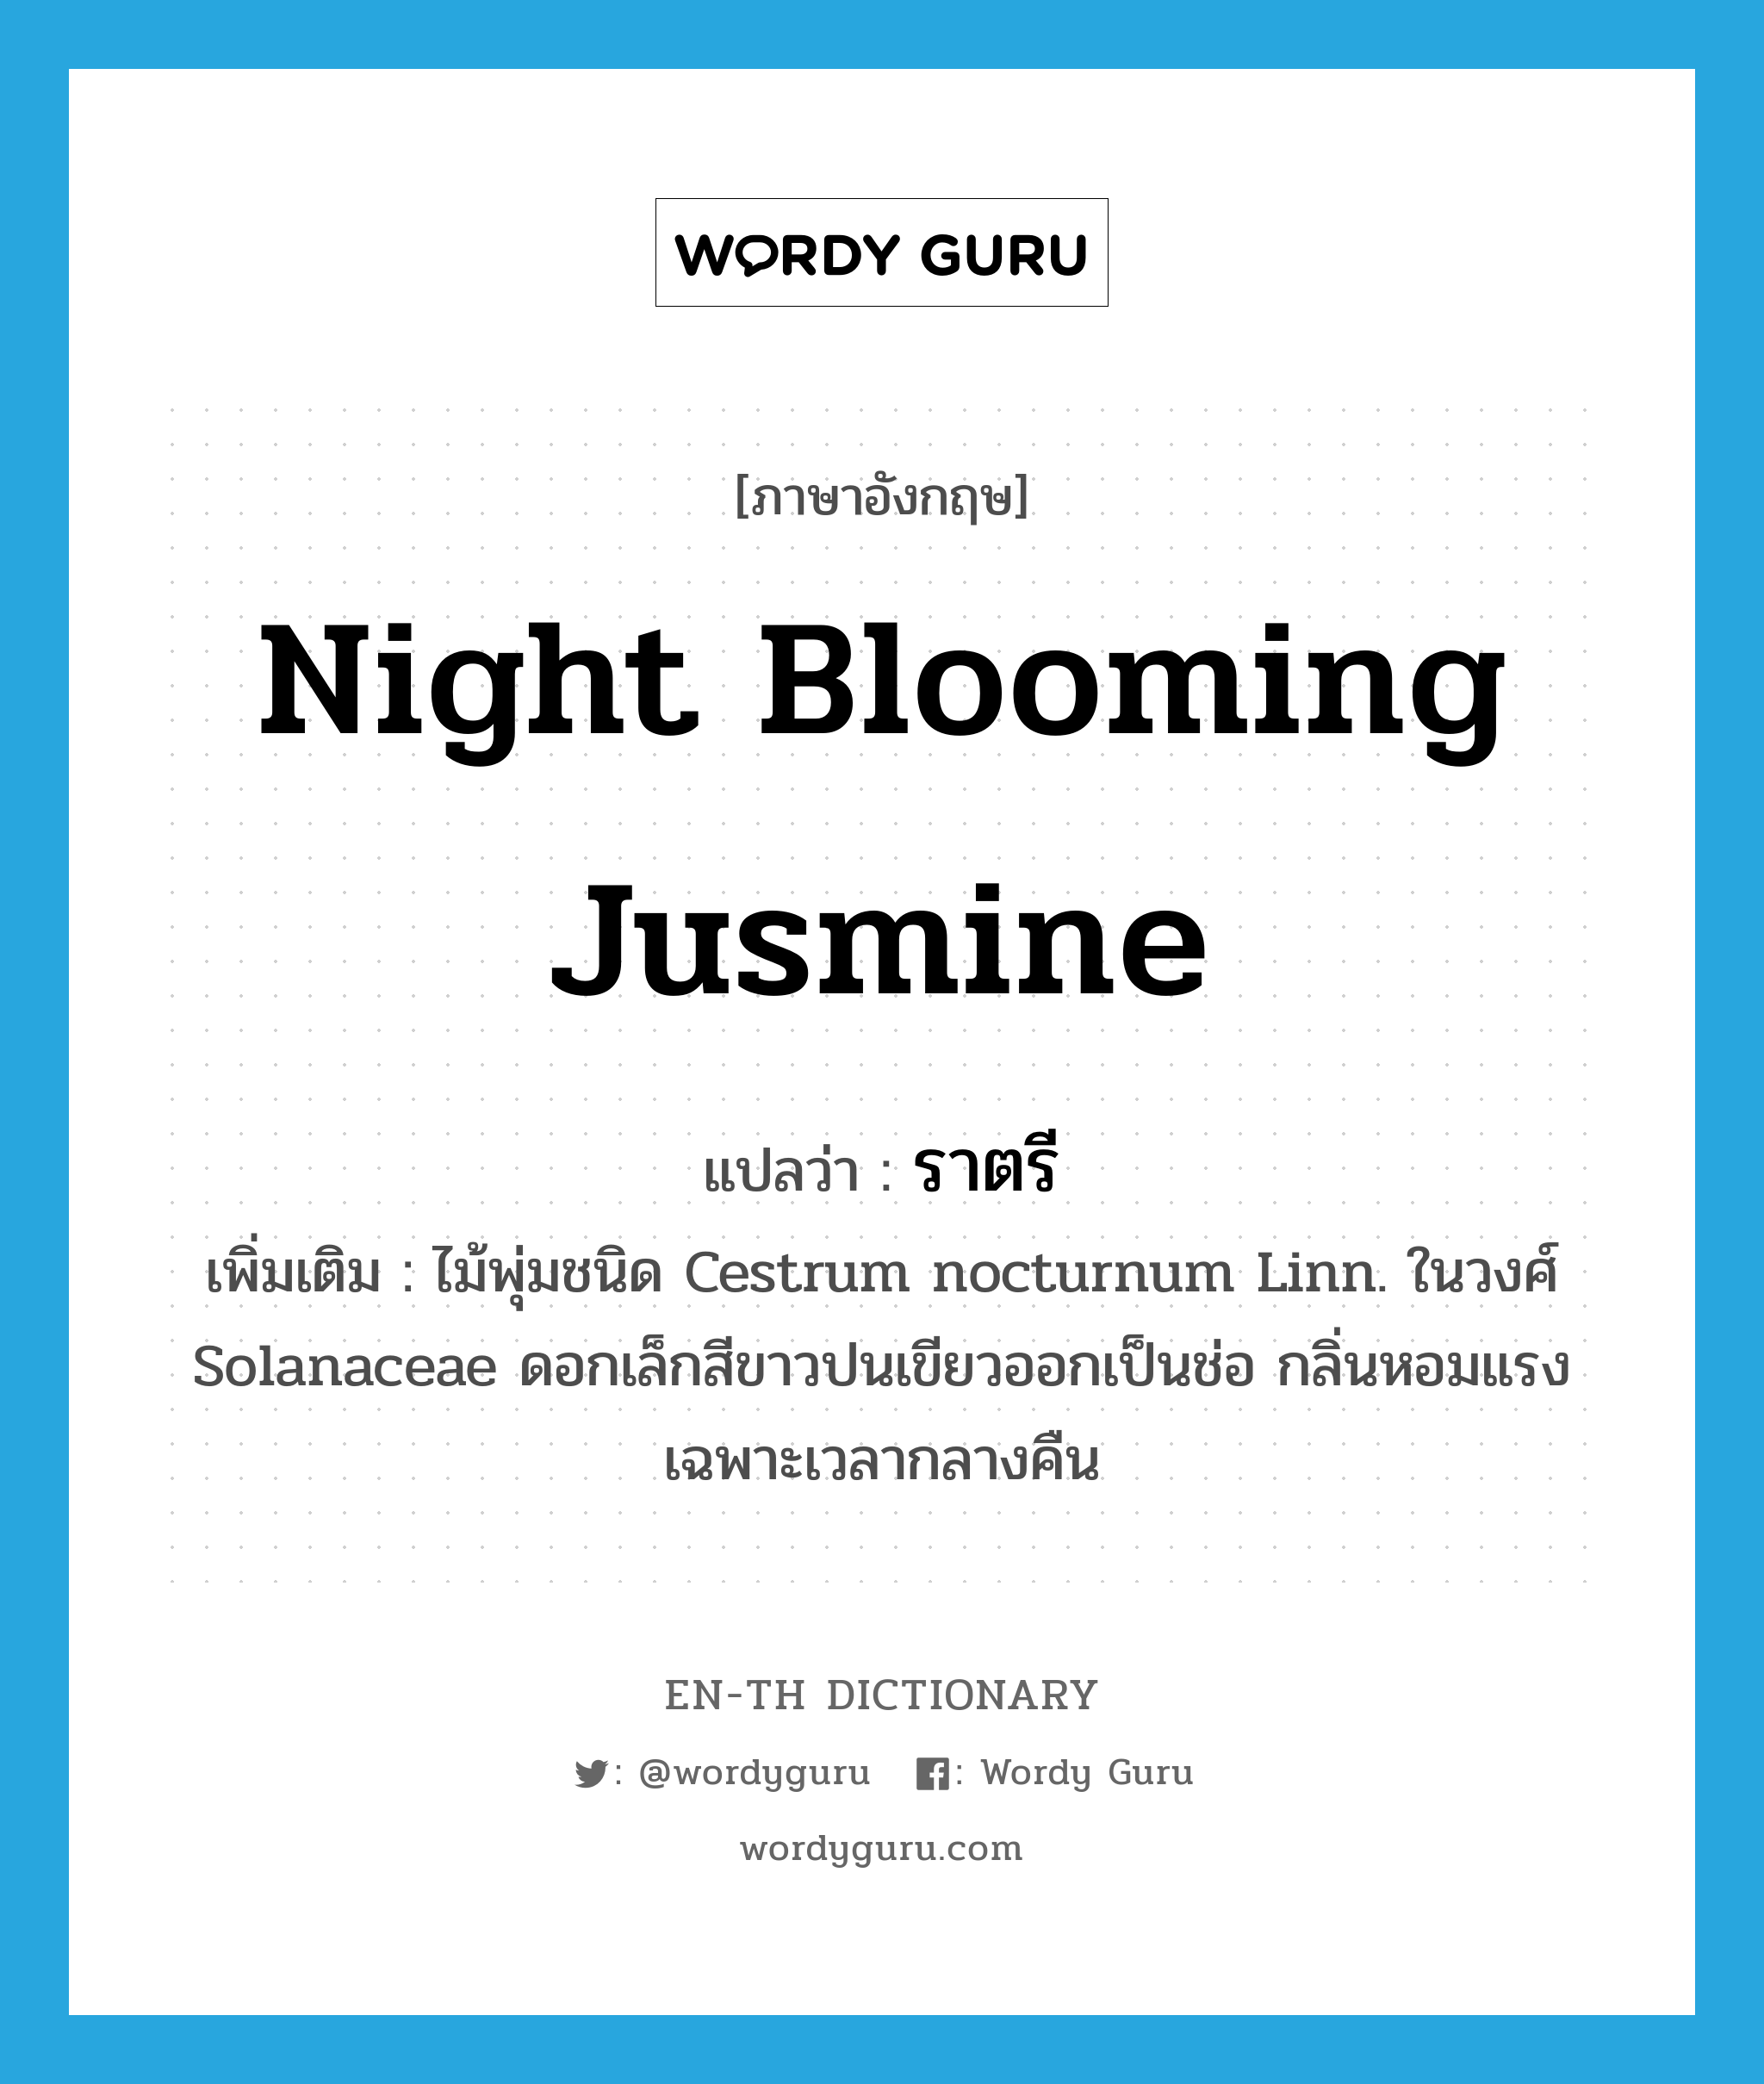 ราตรี ภาษาอังกฤษ?, คำศัพท์ภาษาอังกฤษ ราตรี แปลว่า Night blooming jusmine ประเภท N เพิ่มเติม ไม้พุ่มชนิด Cestrum nocturnum Linn. ในวงศ์ Solanaceae ดอกเล็กสีขาวปนเขียวออกเป็นช่อ กลิ่นหอมแรงเฉพาะเวลากลางคืน หมวด N